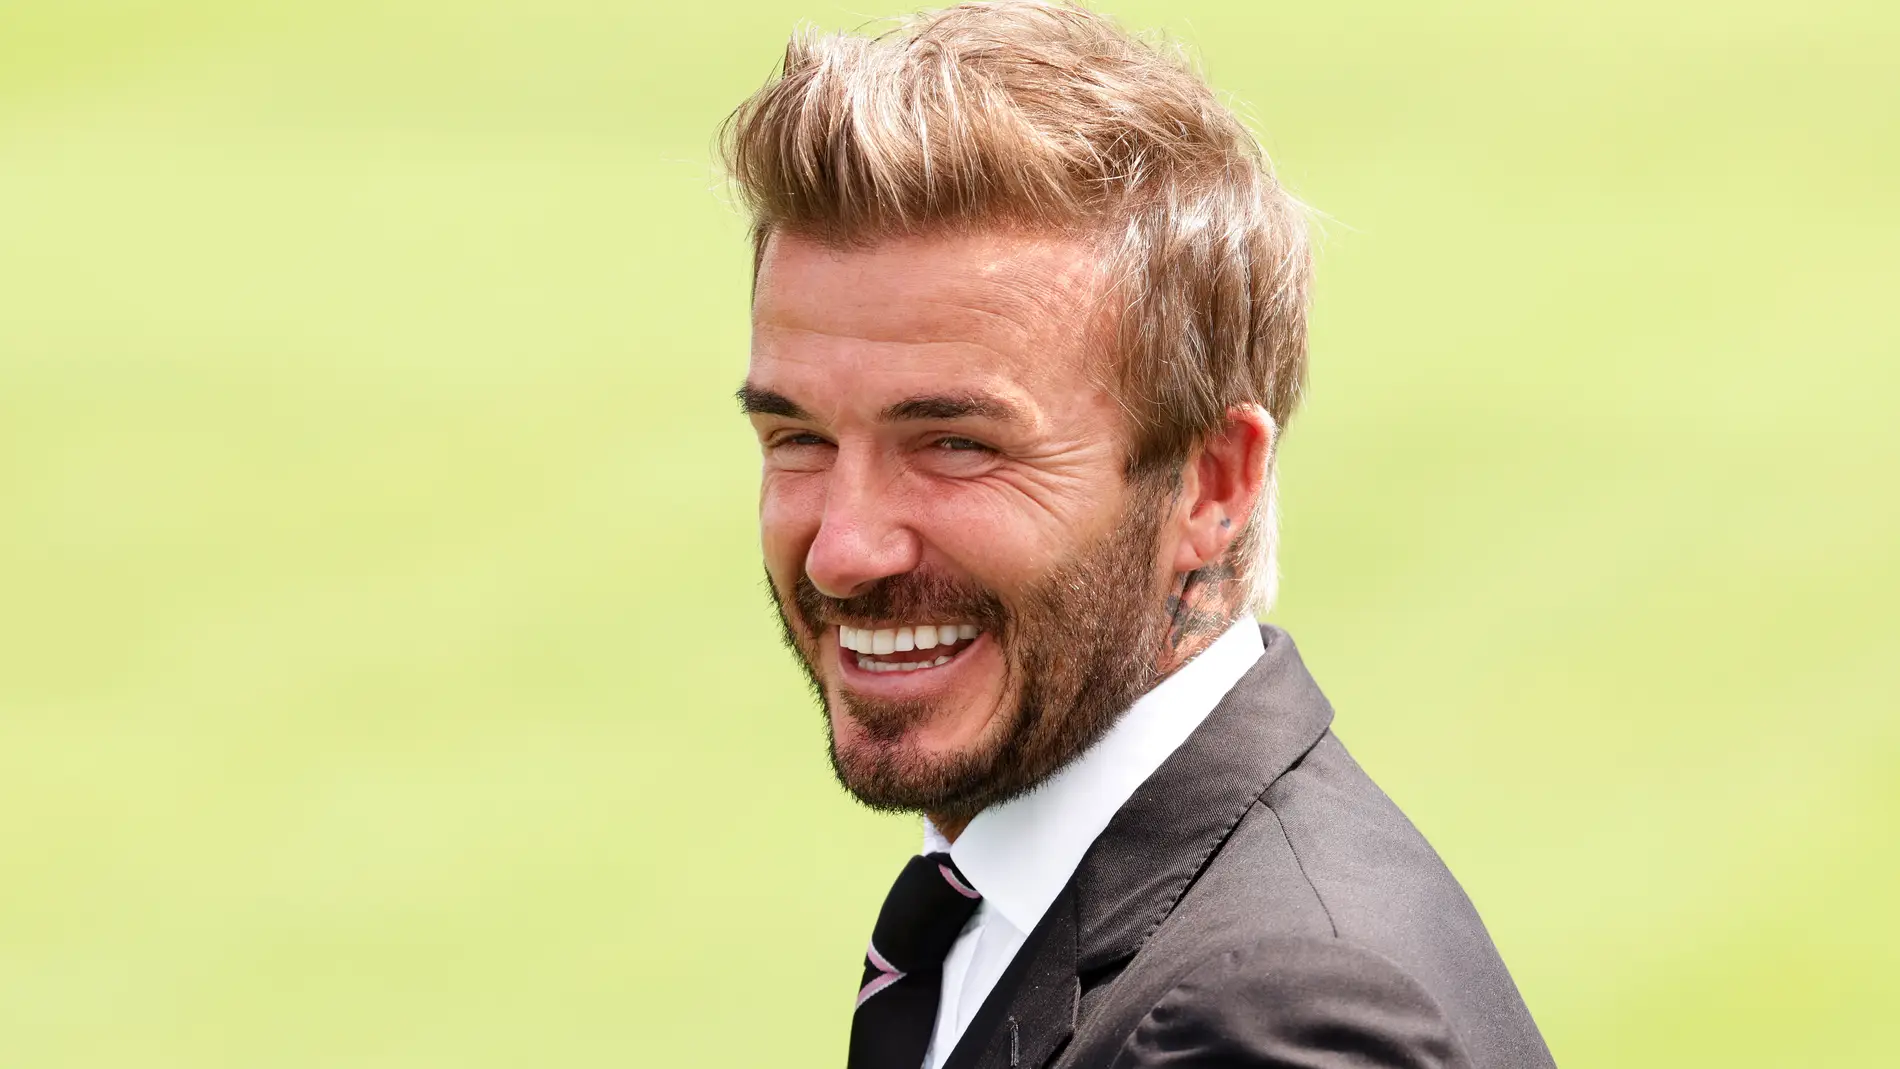 David Beckham calla a sus hijos Romeo y Cruz con su nuevo look